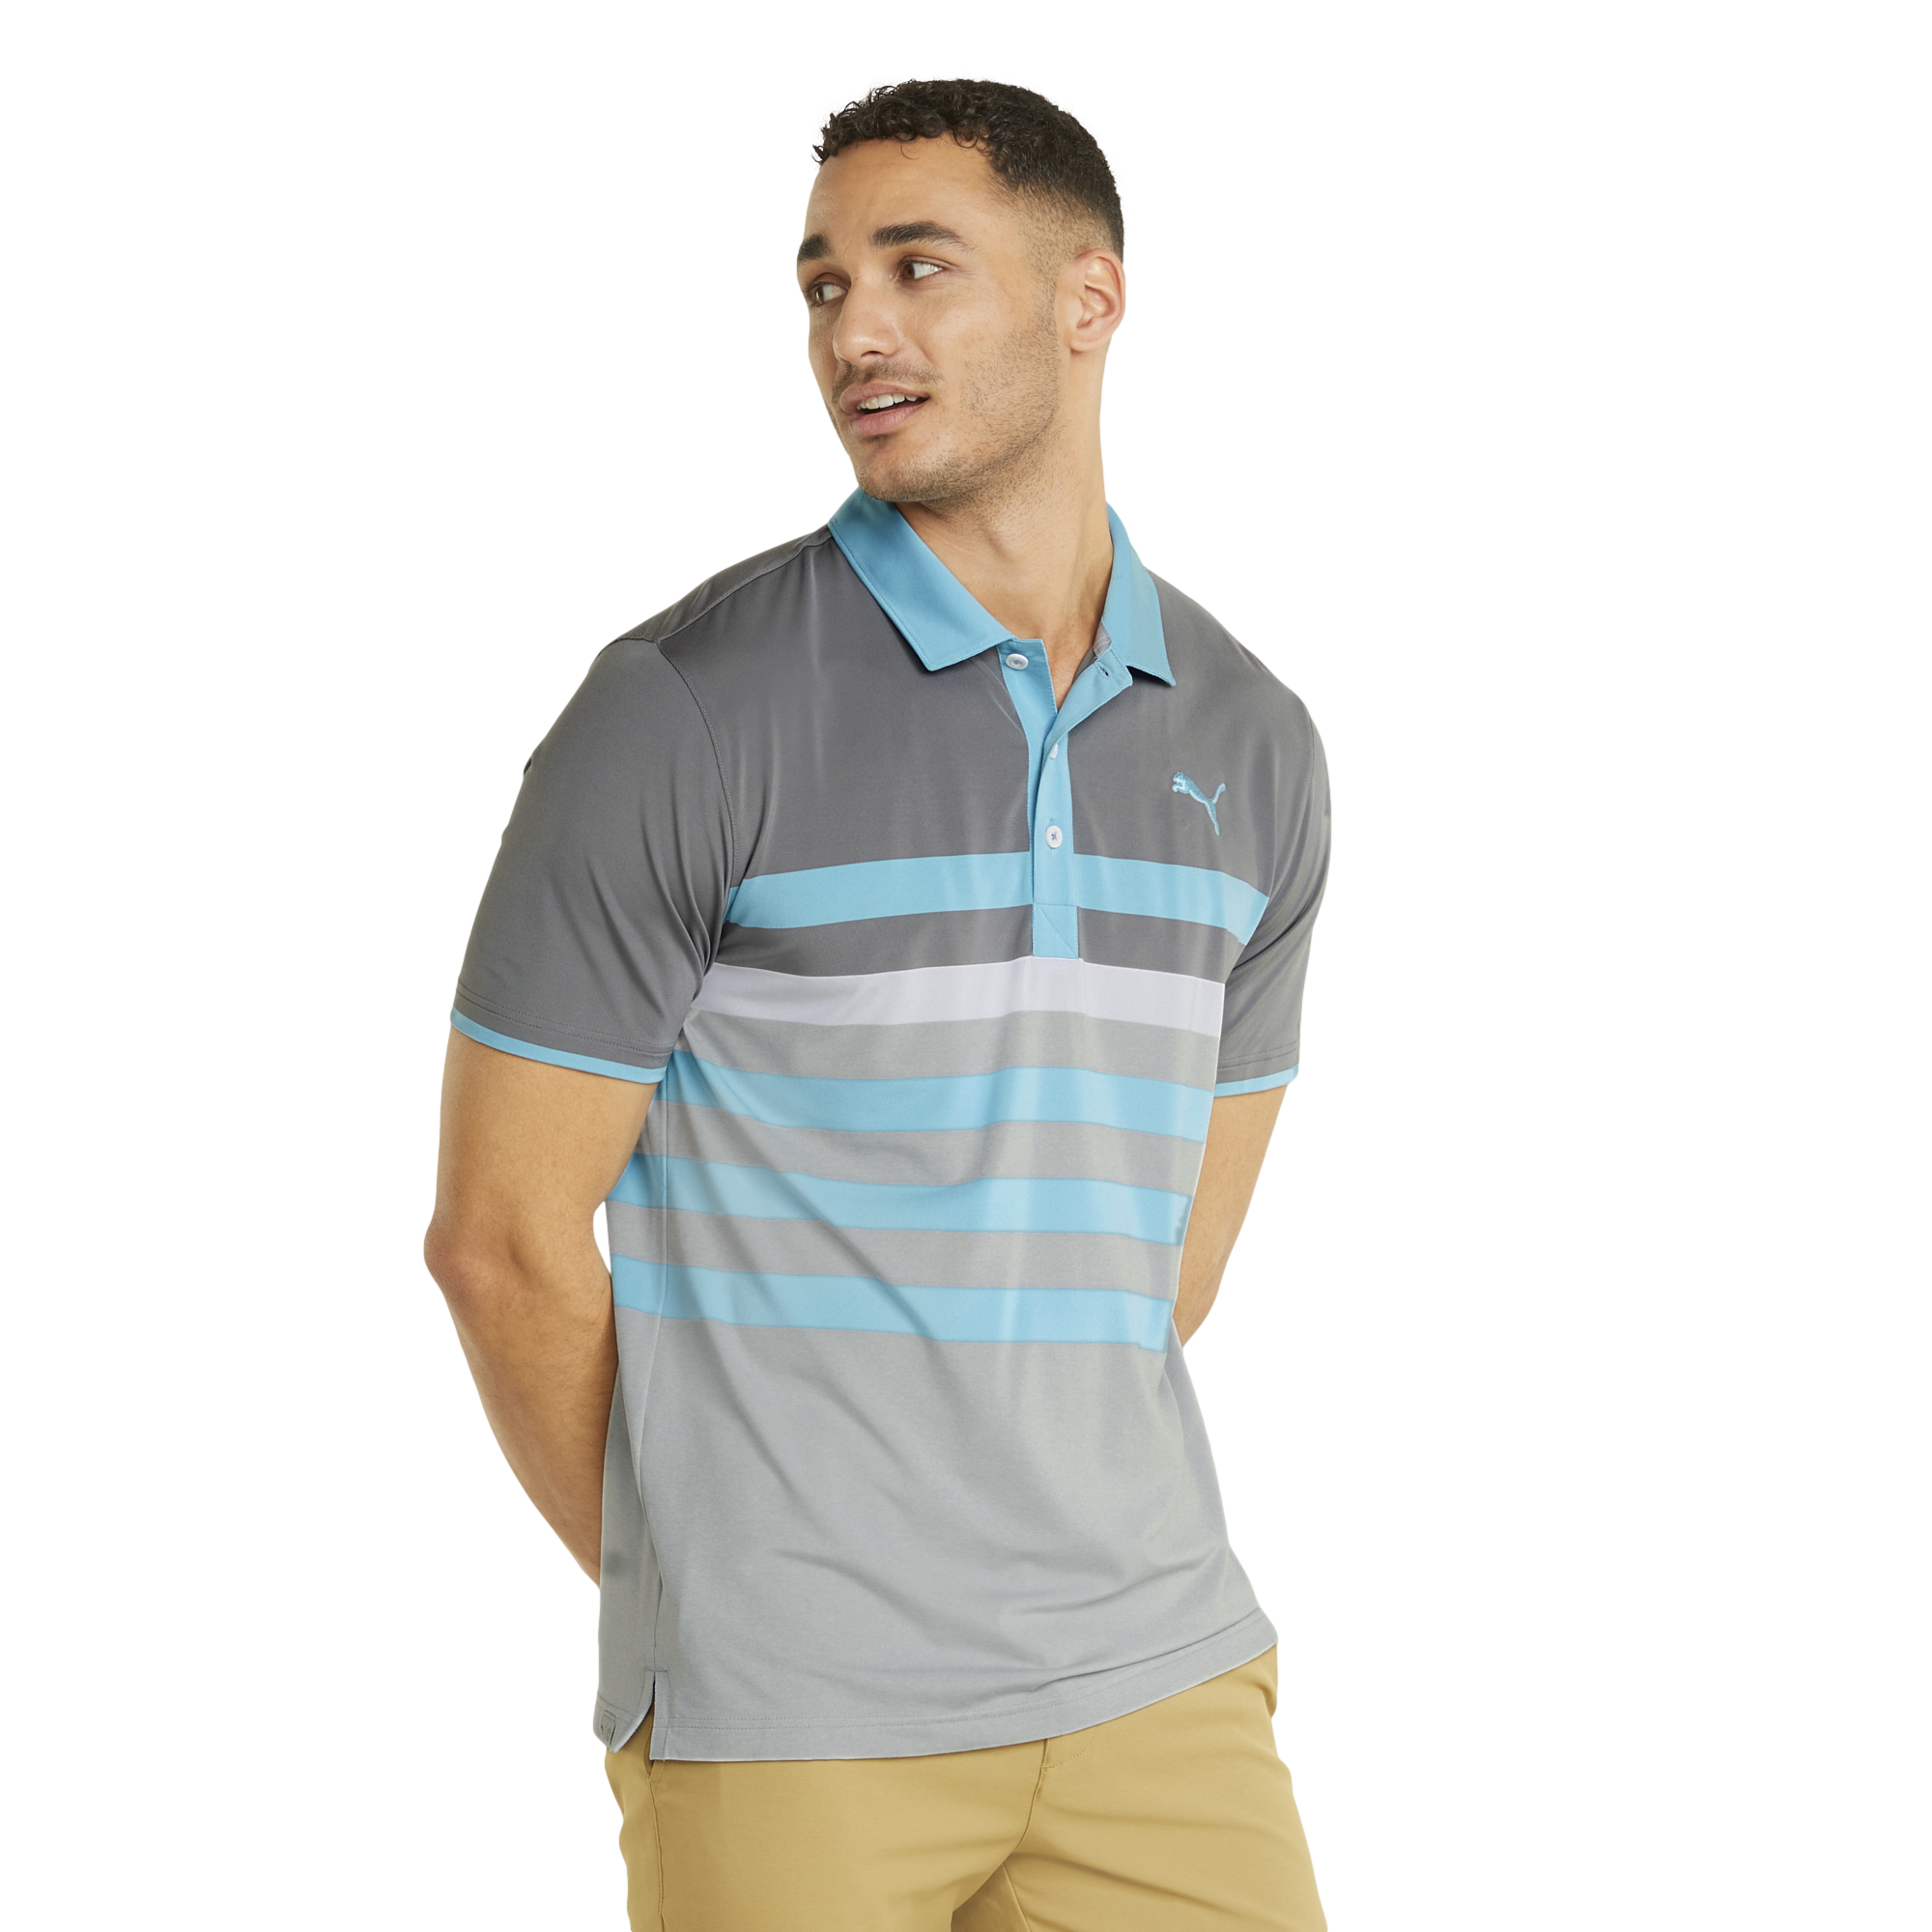 MATTR One Way Short Sleeve Golf Polo Shirt